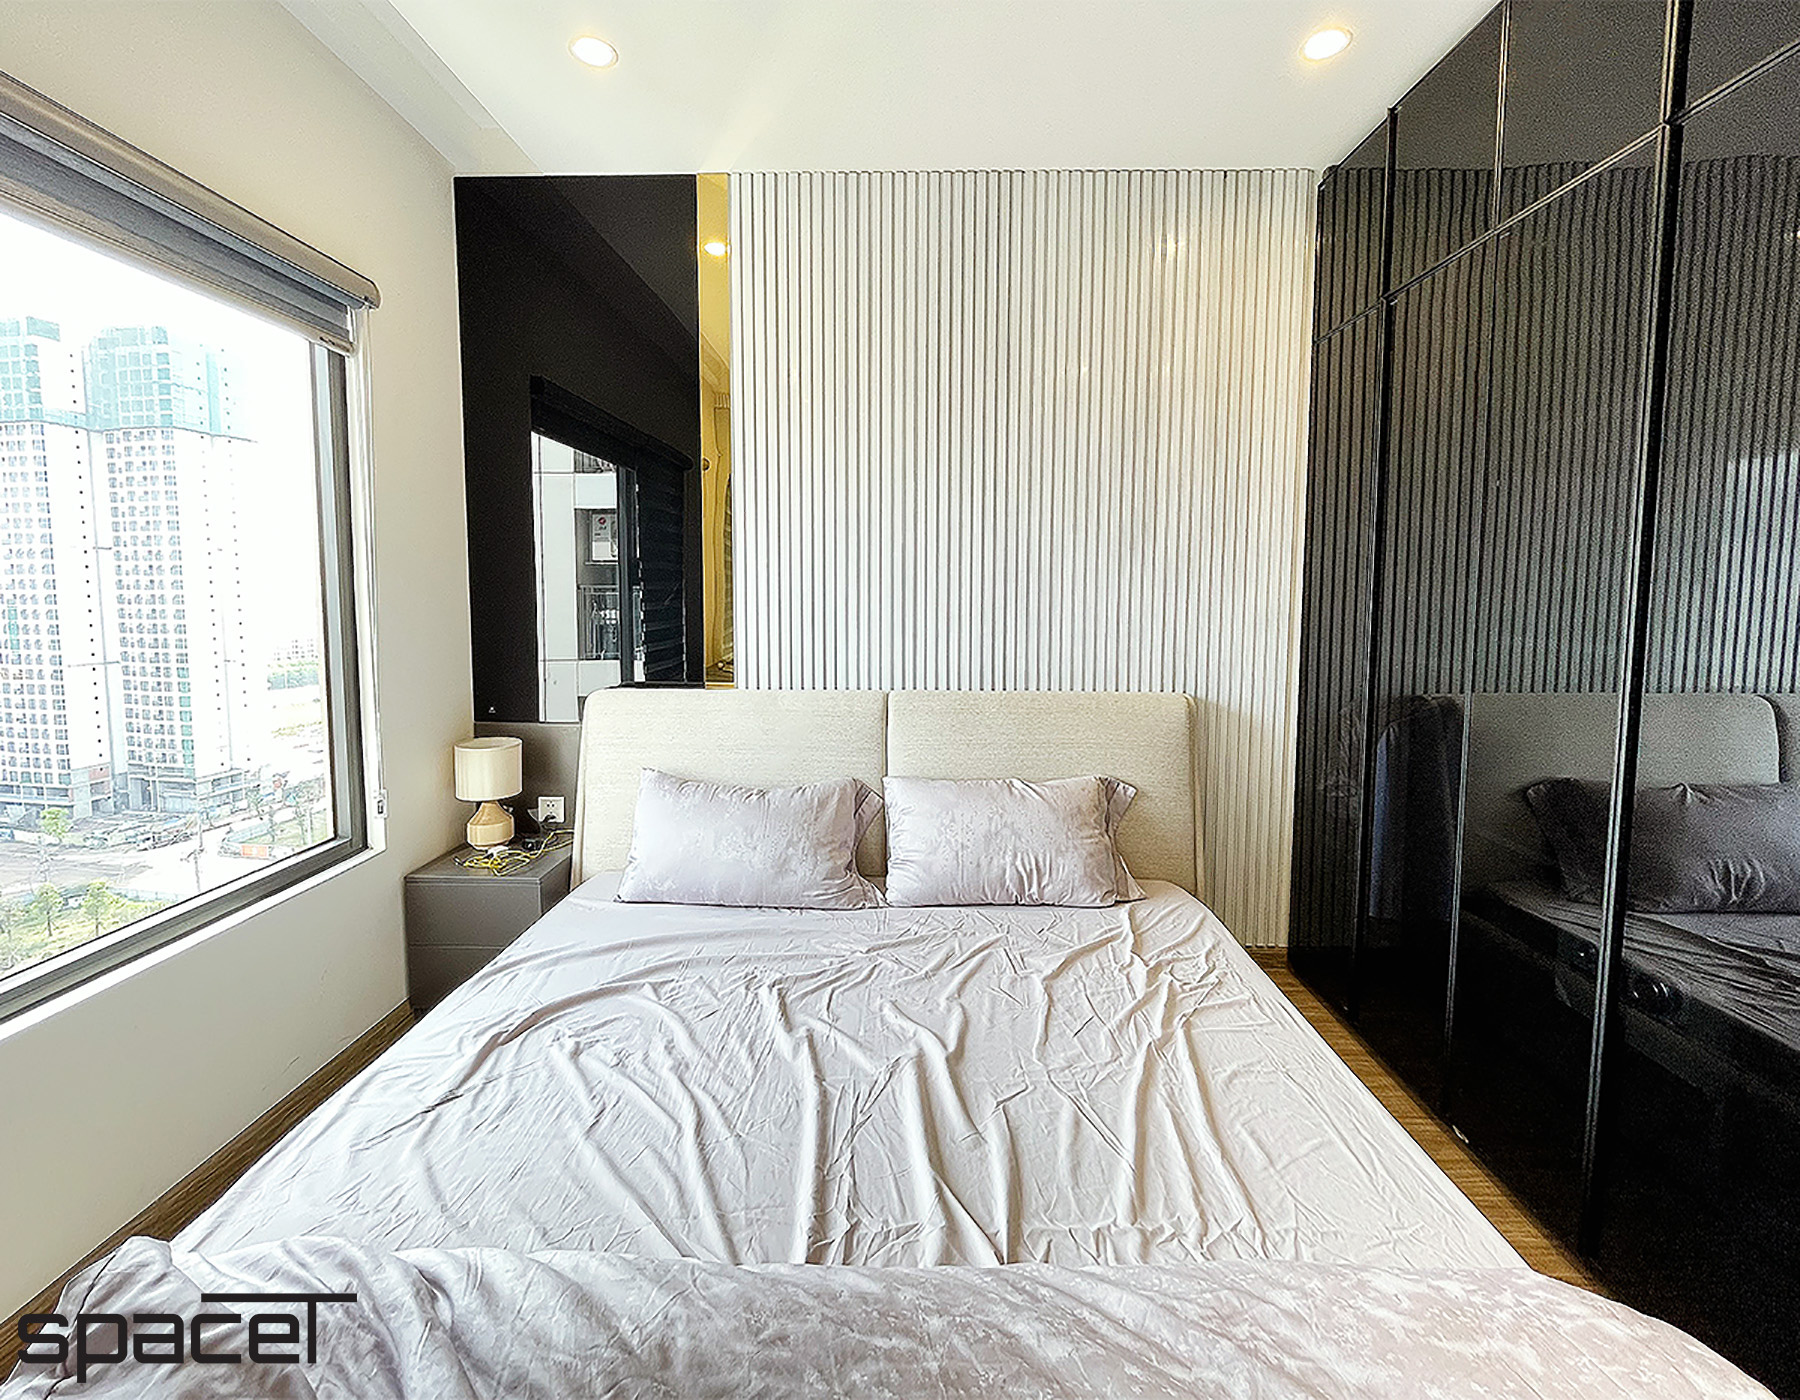 Phòng ngủ, phong cách Hiện đại Modern, hoàn thiện nội thất, căn hộ The Origami Vinhomes Quận 9